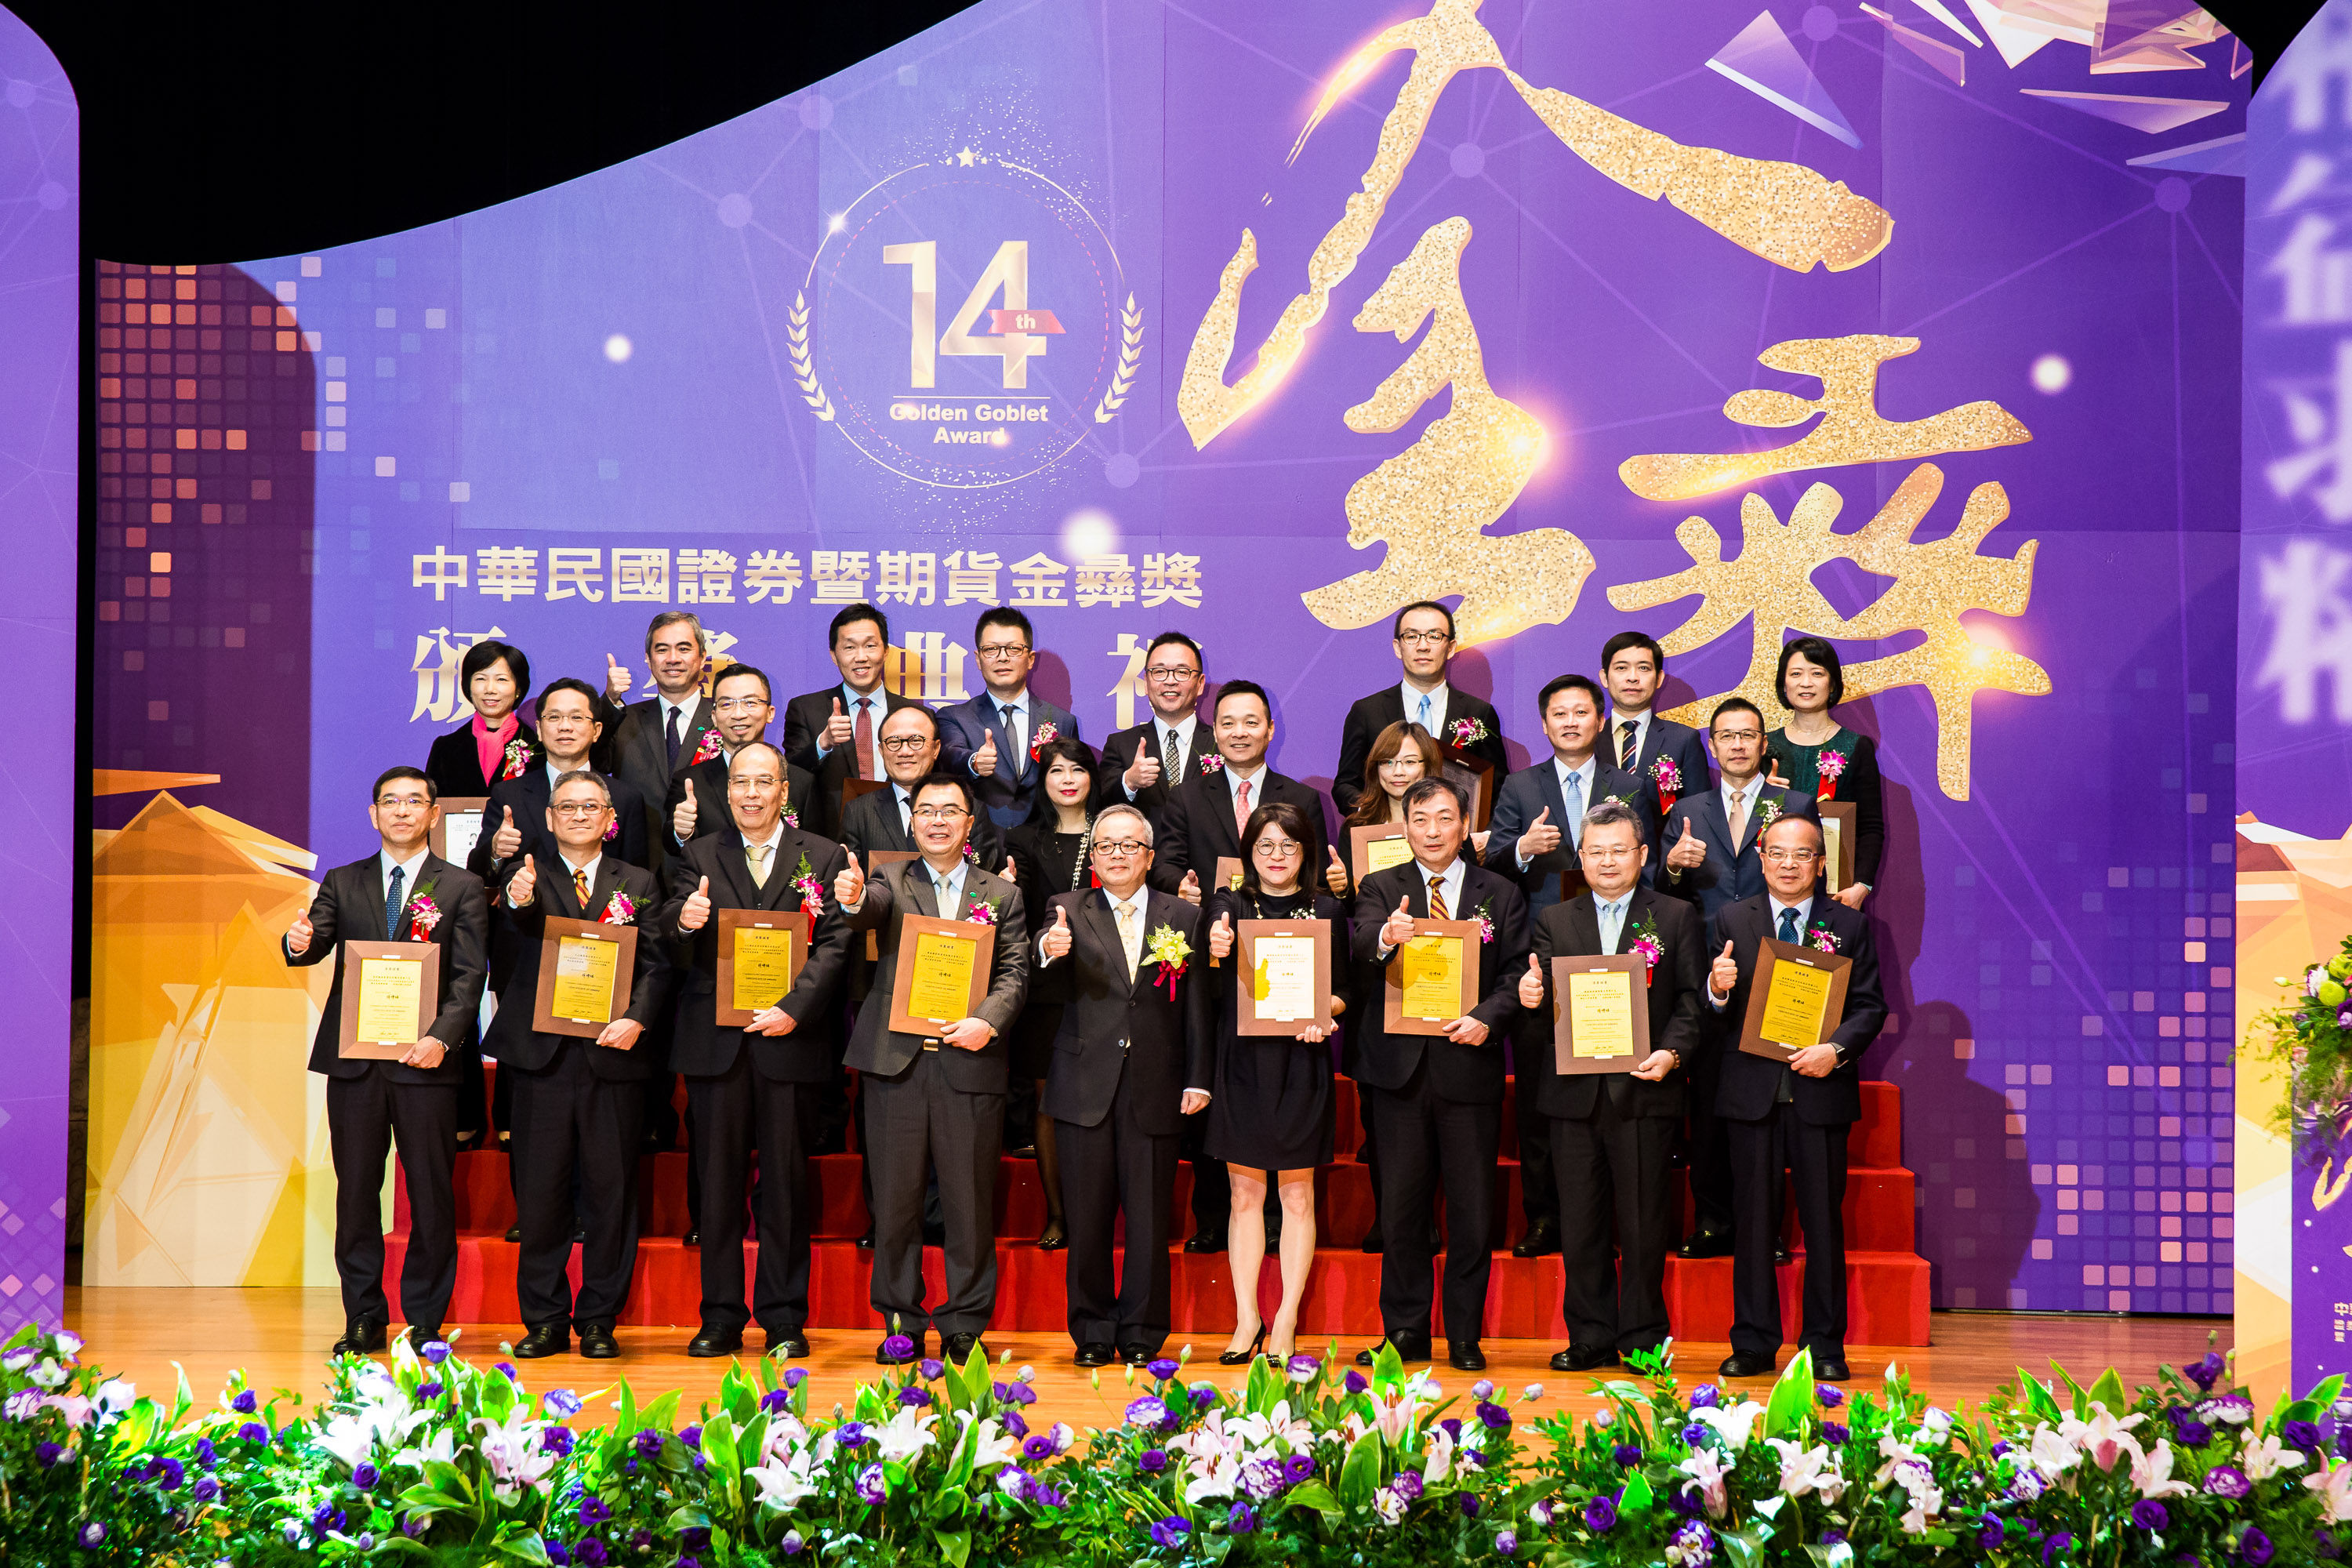 行政院施副院長俊吉(前排中)與得獎者及與會嘉賓合影(jpg)